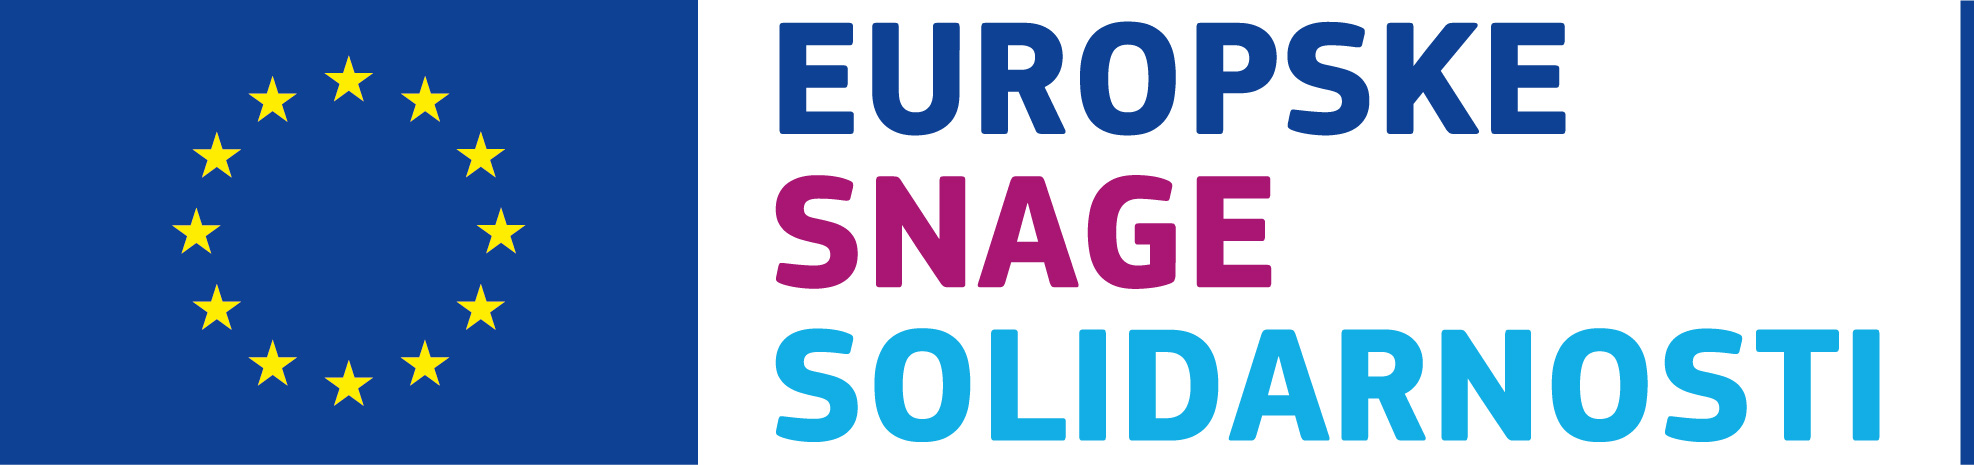 Poziv na podnošenje projektnih prijedloga za program Europske snage solidarnosti u 2019. godini - Slika 1